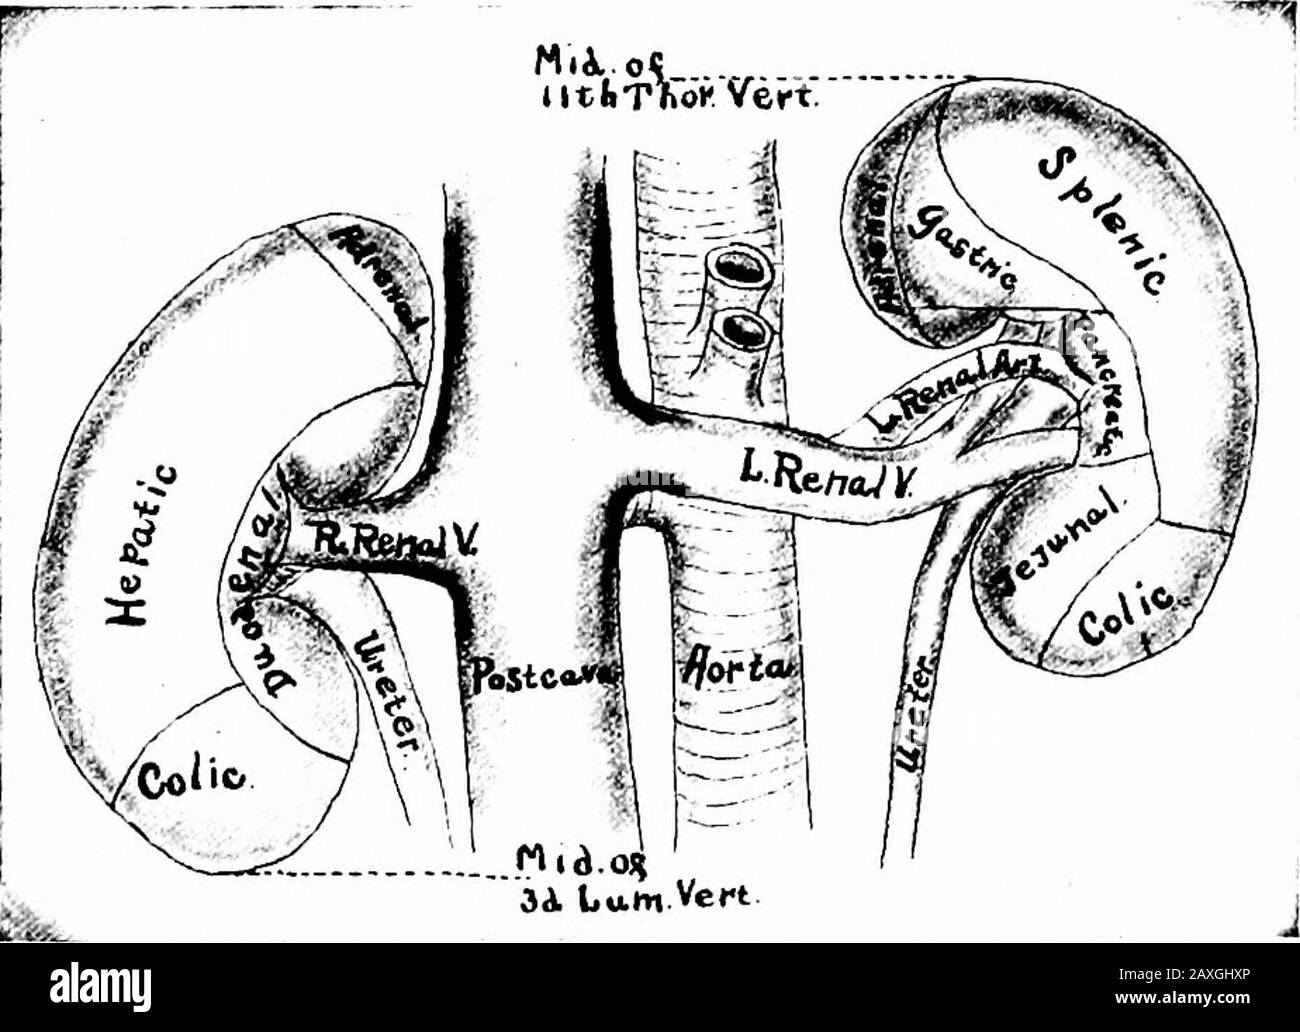 Un manuale di anatomia. Rior pancreaticoduodenale (dalla gastroduodenale dell'arteria epatica), il pancreaticoduodenale inferiore (dall'arteria mesenterica superiore) e il branchesato pancreatico dalle arterie spleniche ed epatiche. Le vene si svuotano nelle vene mesenteriche, spleniche e portali superiori. I nervi sono maintlysimpatici dal plesso solare per mezzo dei plessi mesenterici celiaci, splenici e superiori. Capitolo VIII IL SISTEMA URINARIO il sistema urinario comprende i due reni, due ureteri, il tedder e l'uretra. Il KJDITEYS Ogni rene {ren) è un grande organo a forma di fagiolo, Foto Stock